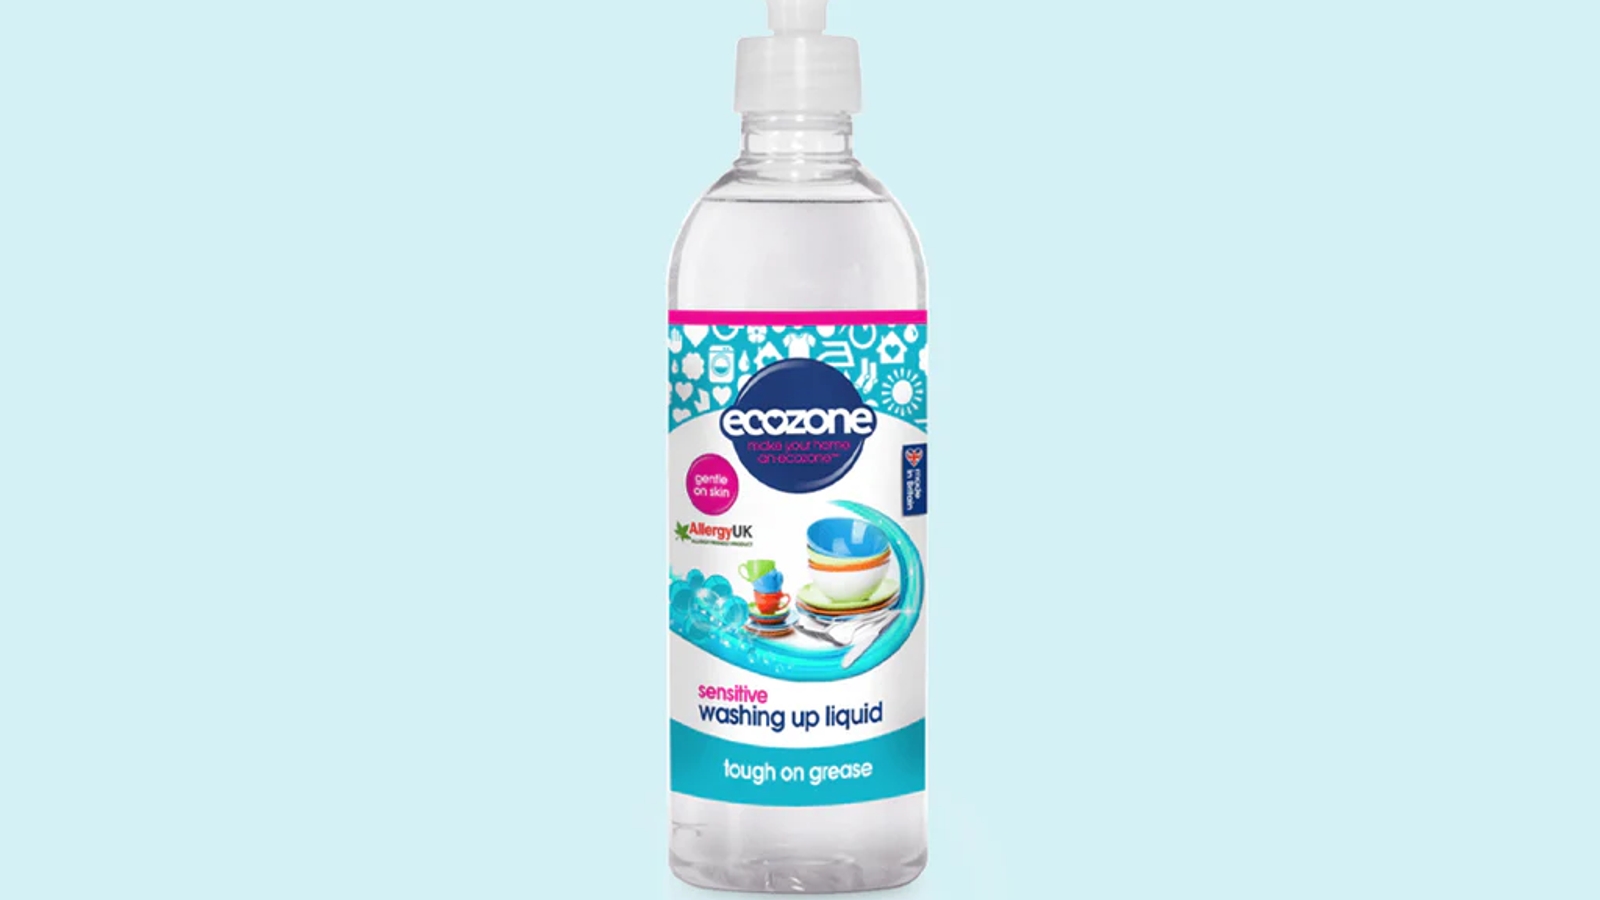 A bottle of ecozone washing up liquid on a light blue background